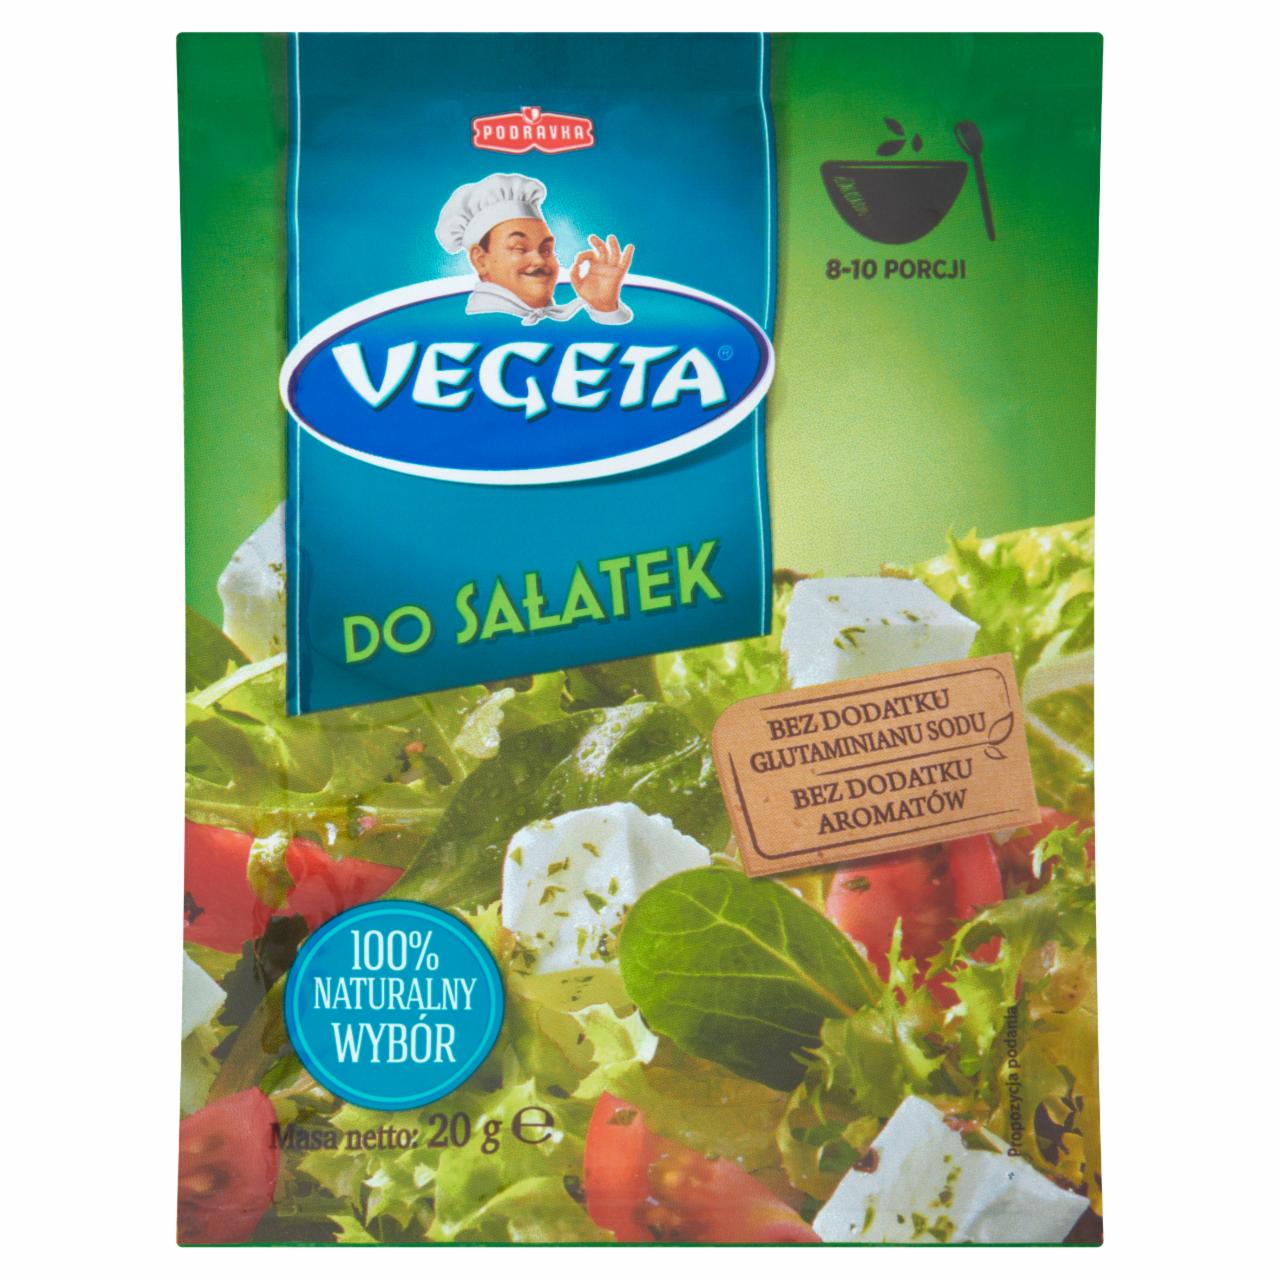 Zdjęcia - Vegeta do sałatek Przyprawa 20 g